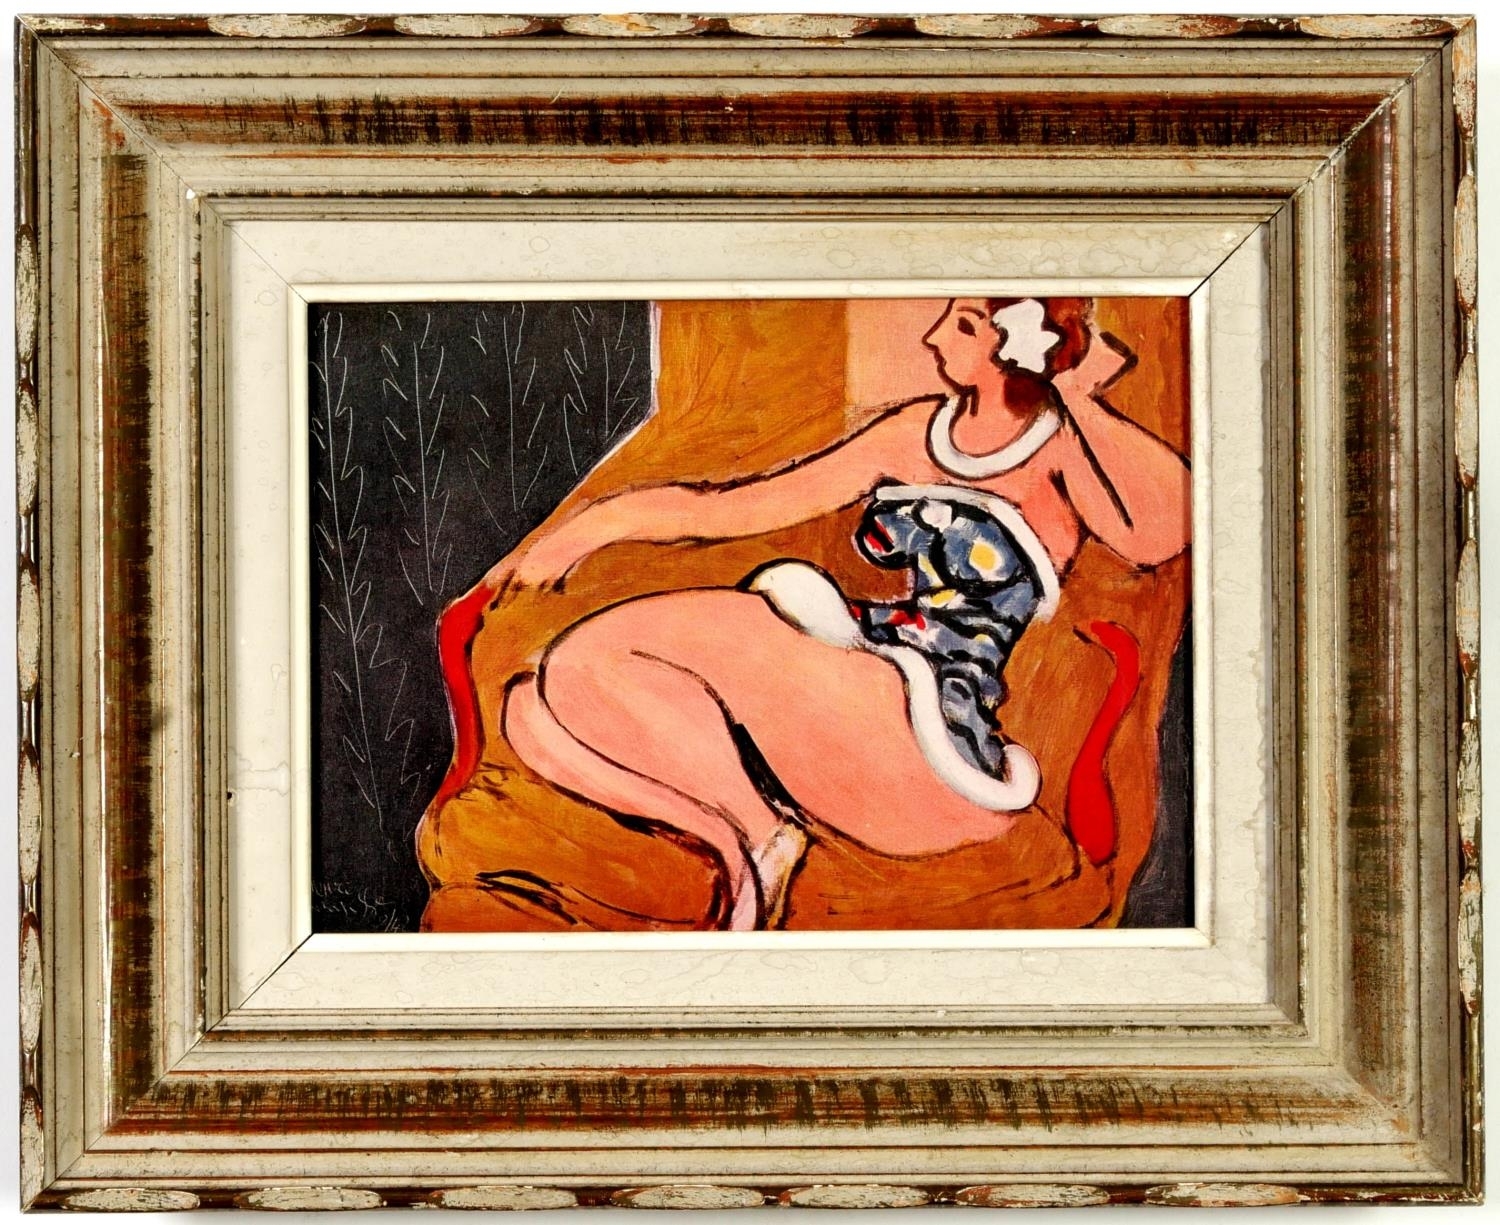 Femme, off set by Henri Matisse